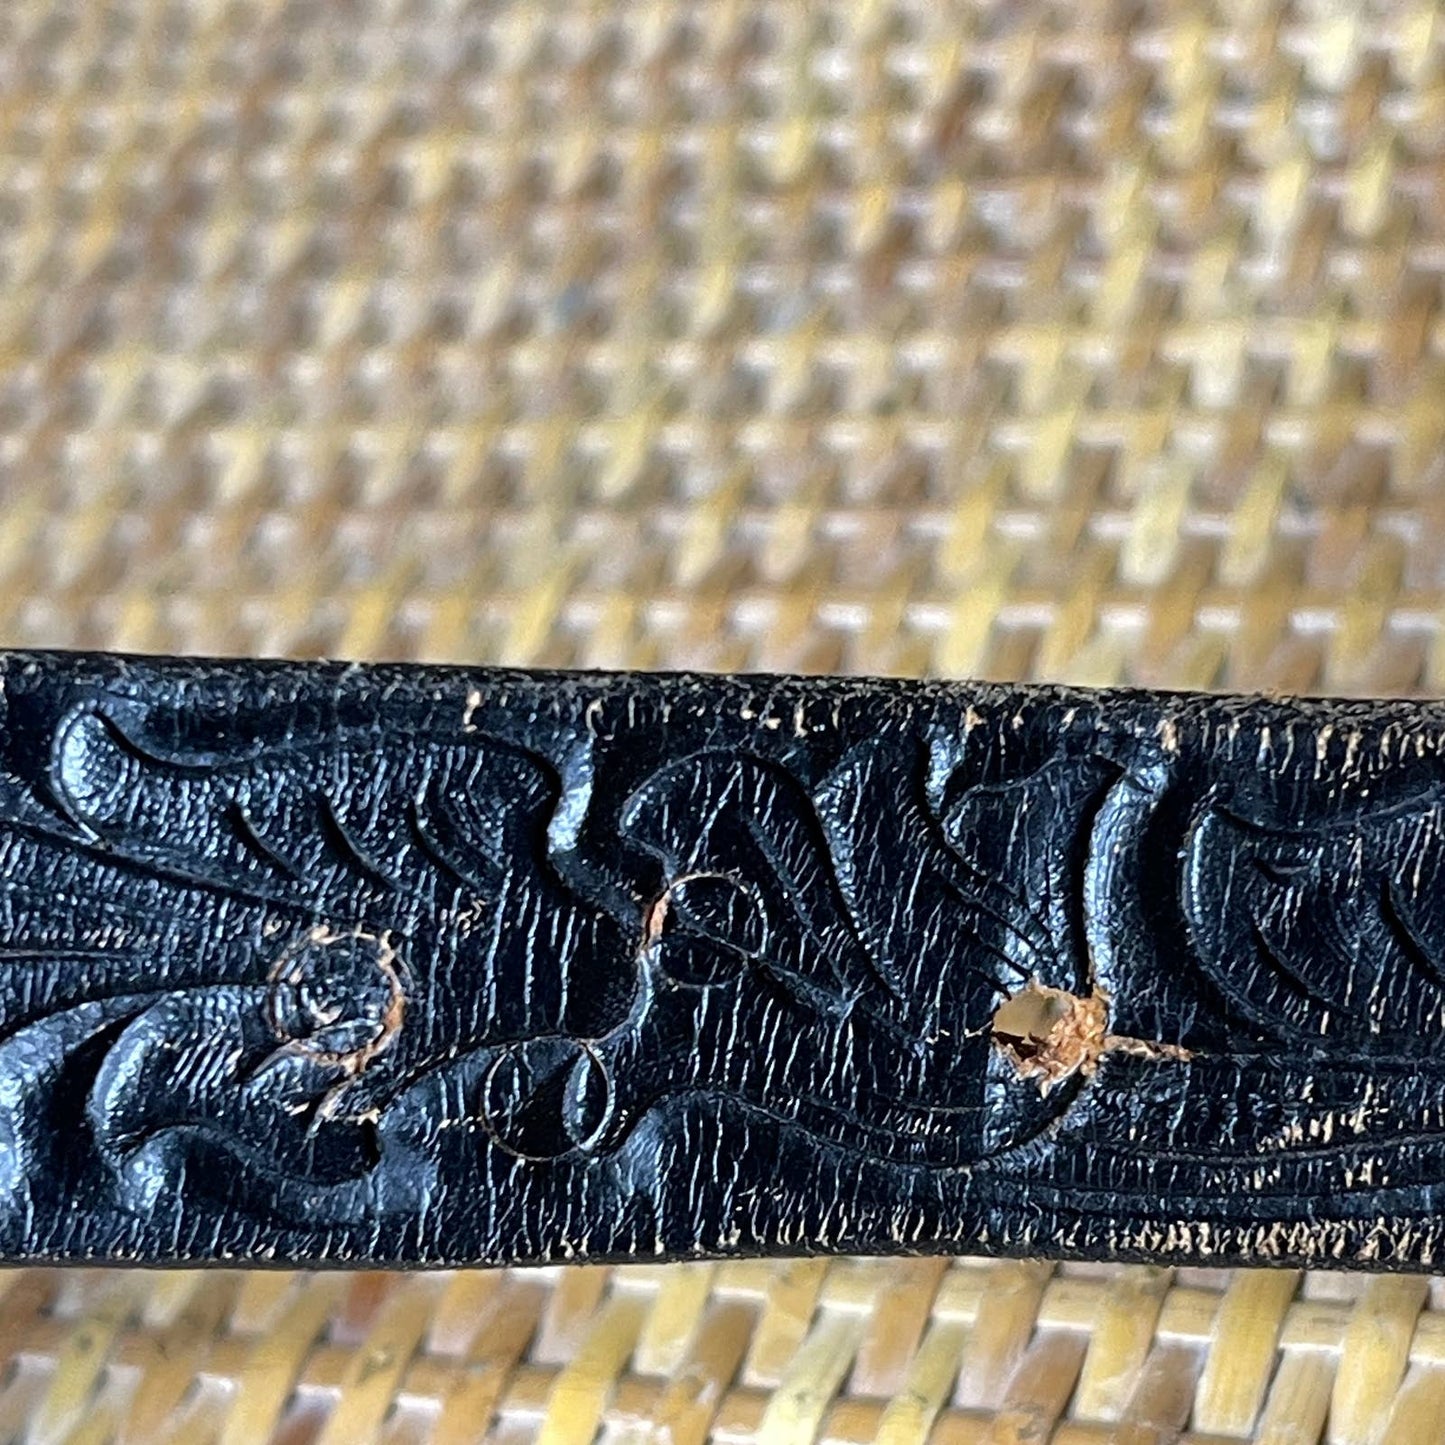 Vintage 70s Black Leather Belt Tooled Belt Floral Design Metal Buckle